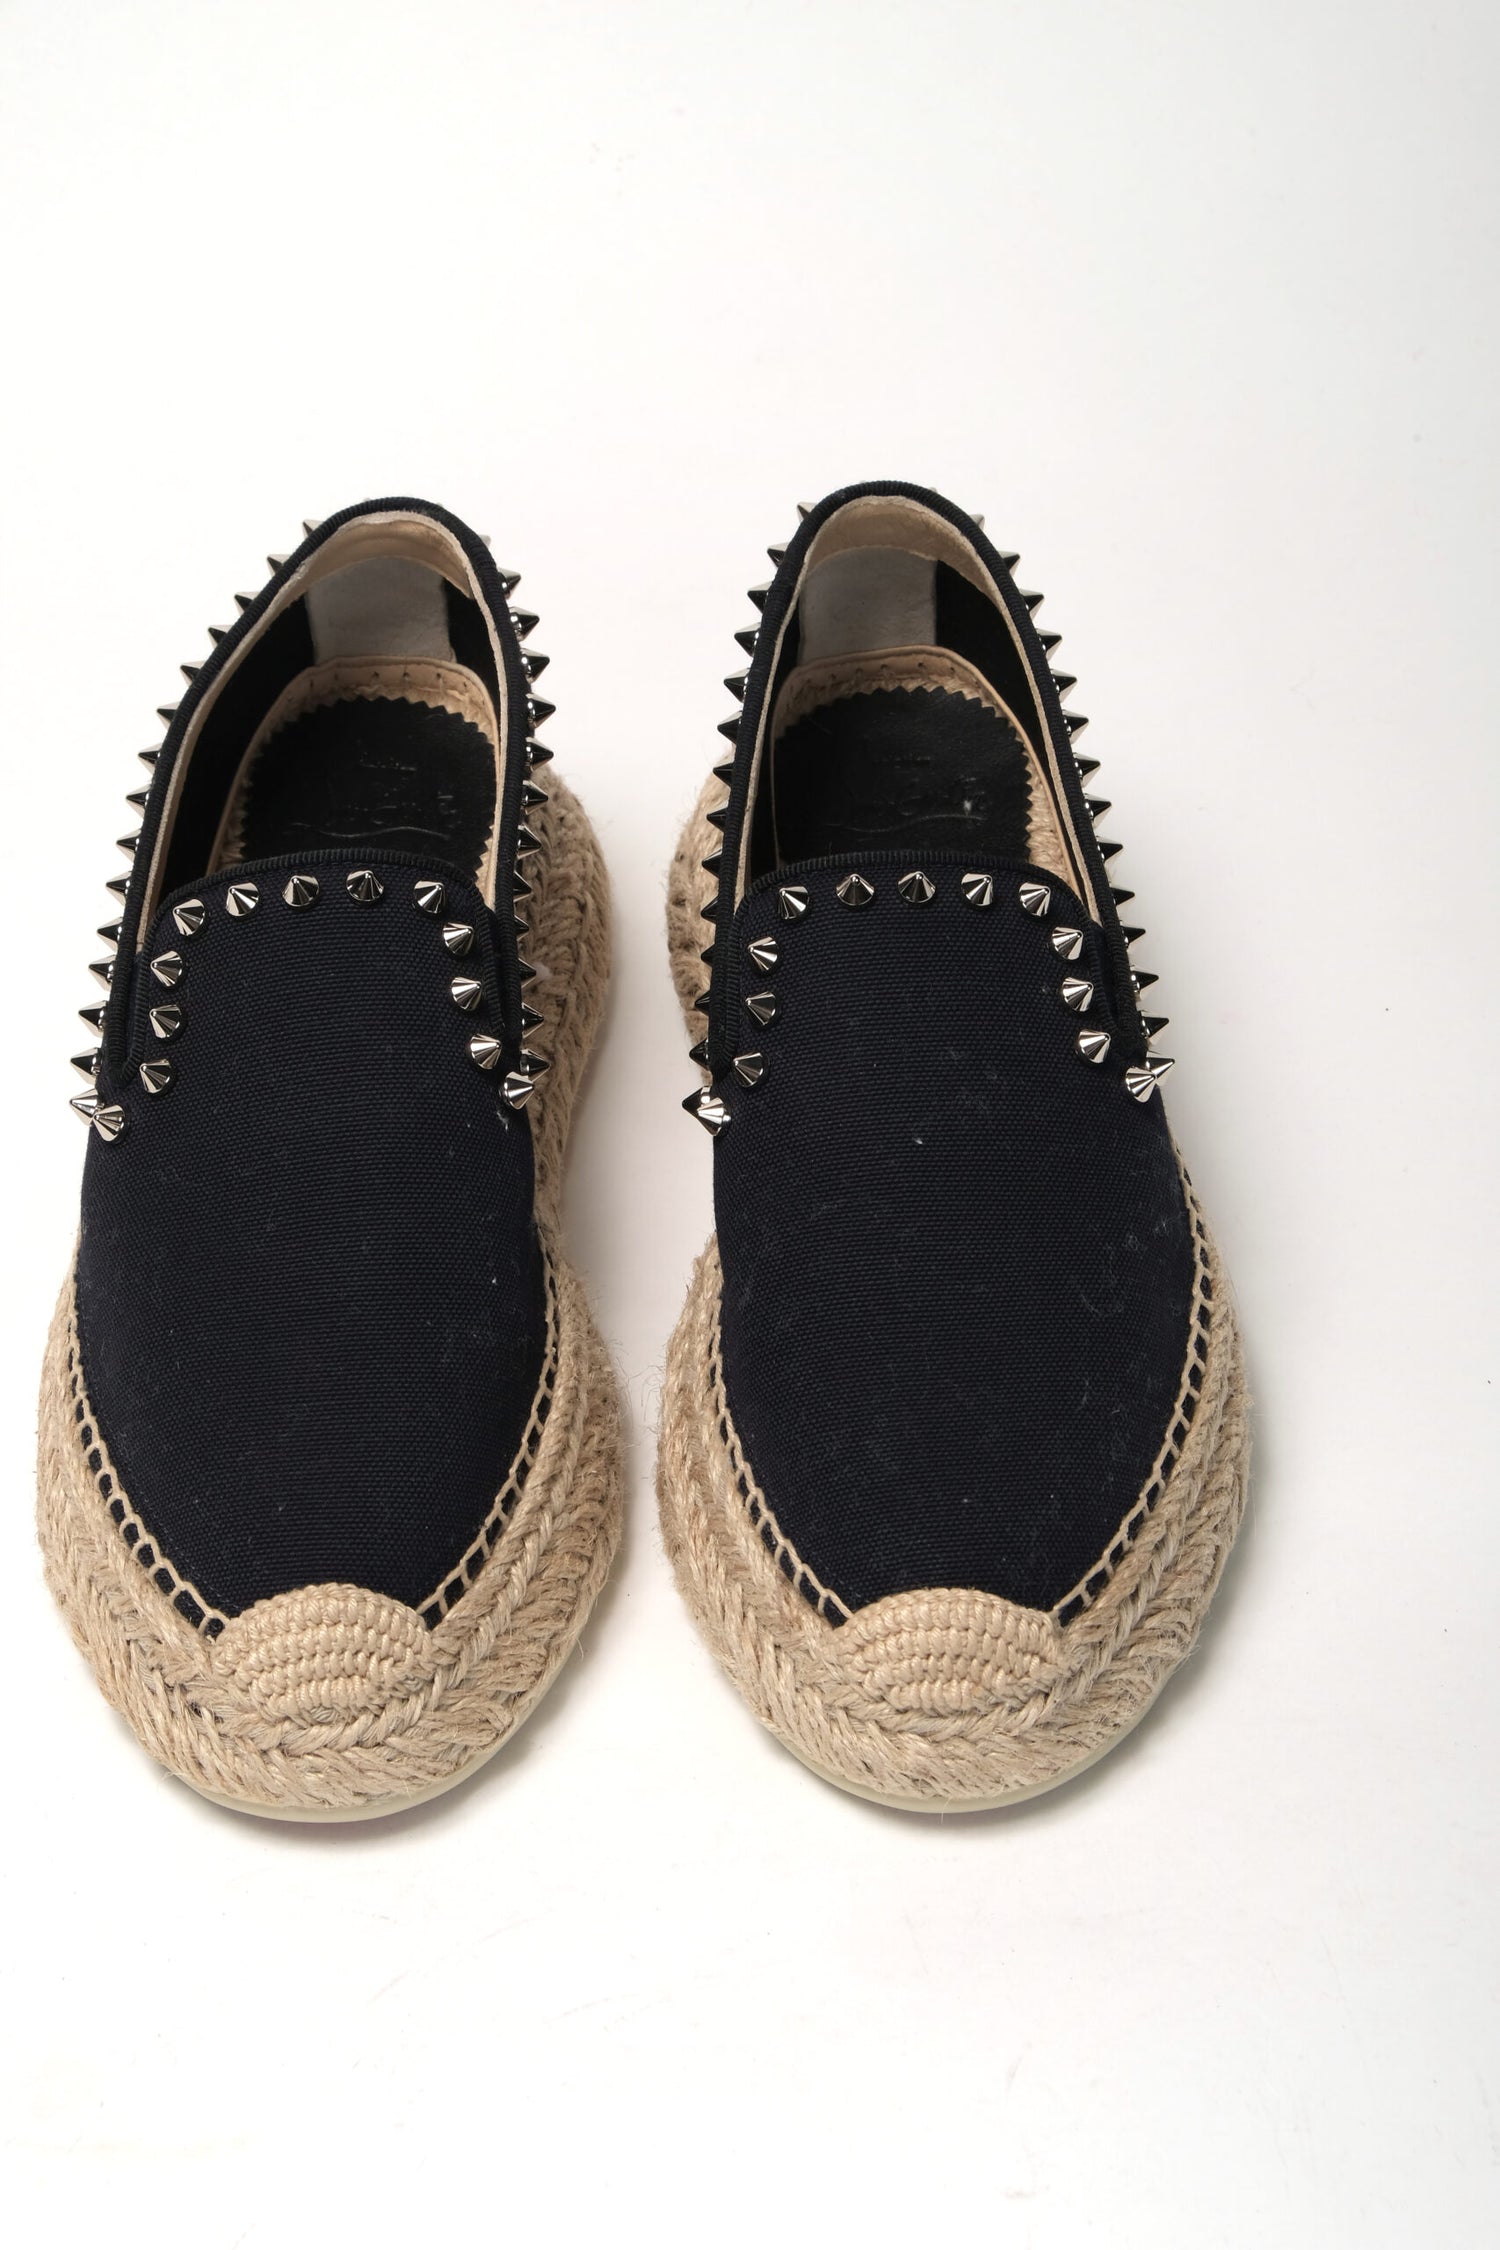 Christian Louboutin Obscur Black Platform Espadrille Espadrille Shoes - DEA STILOSA MILANO